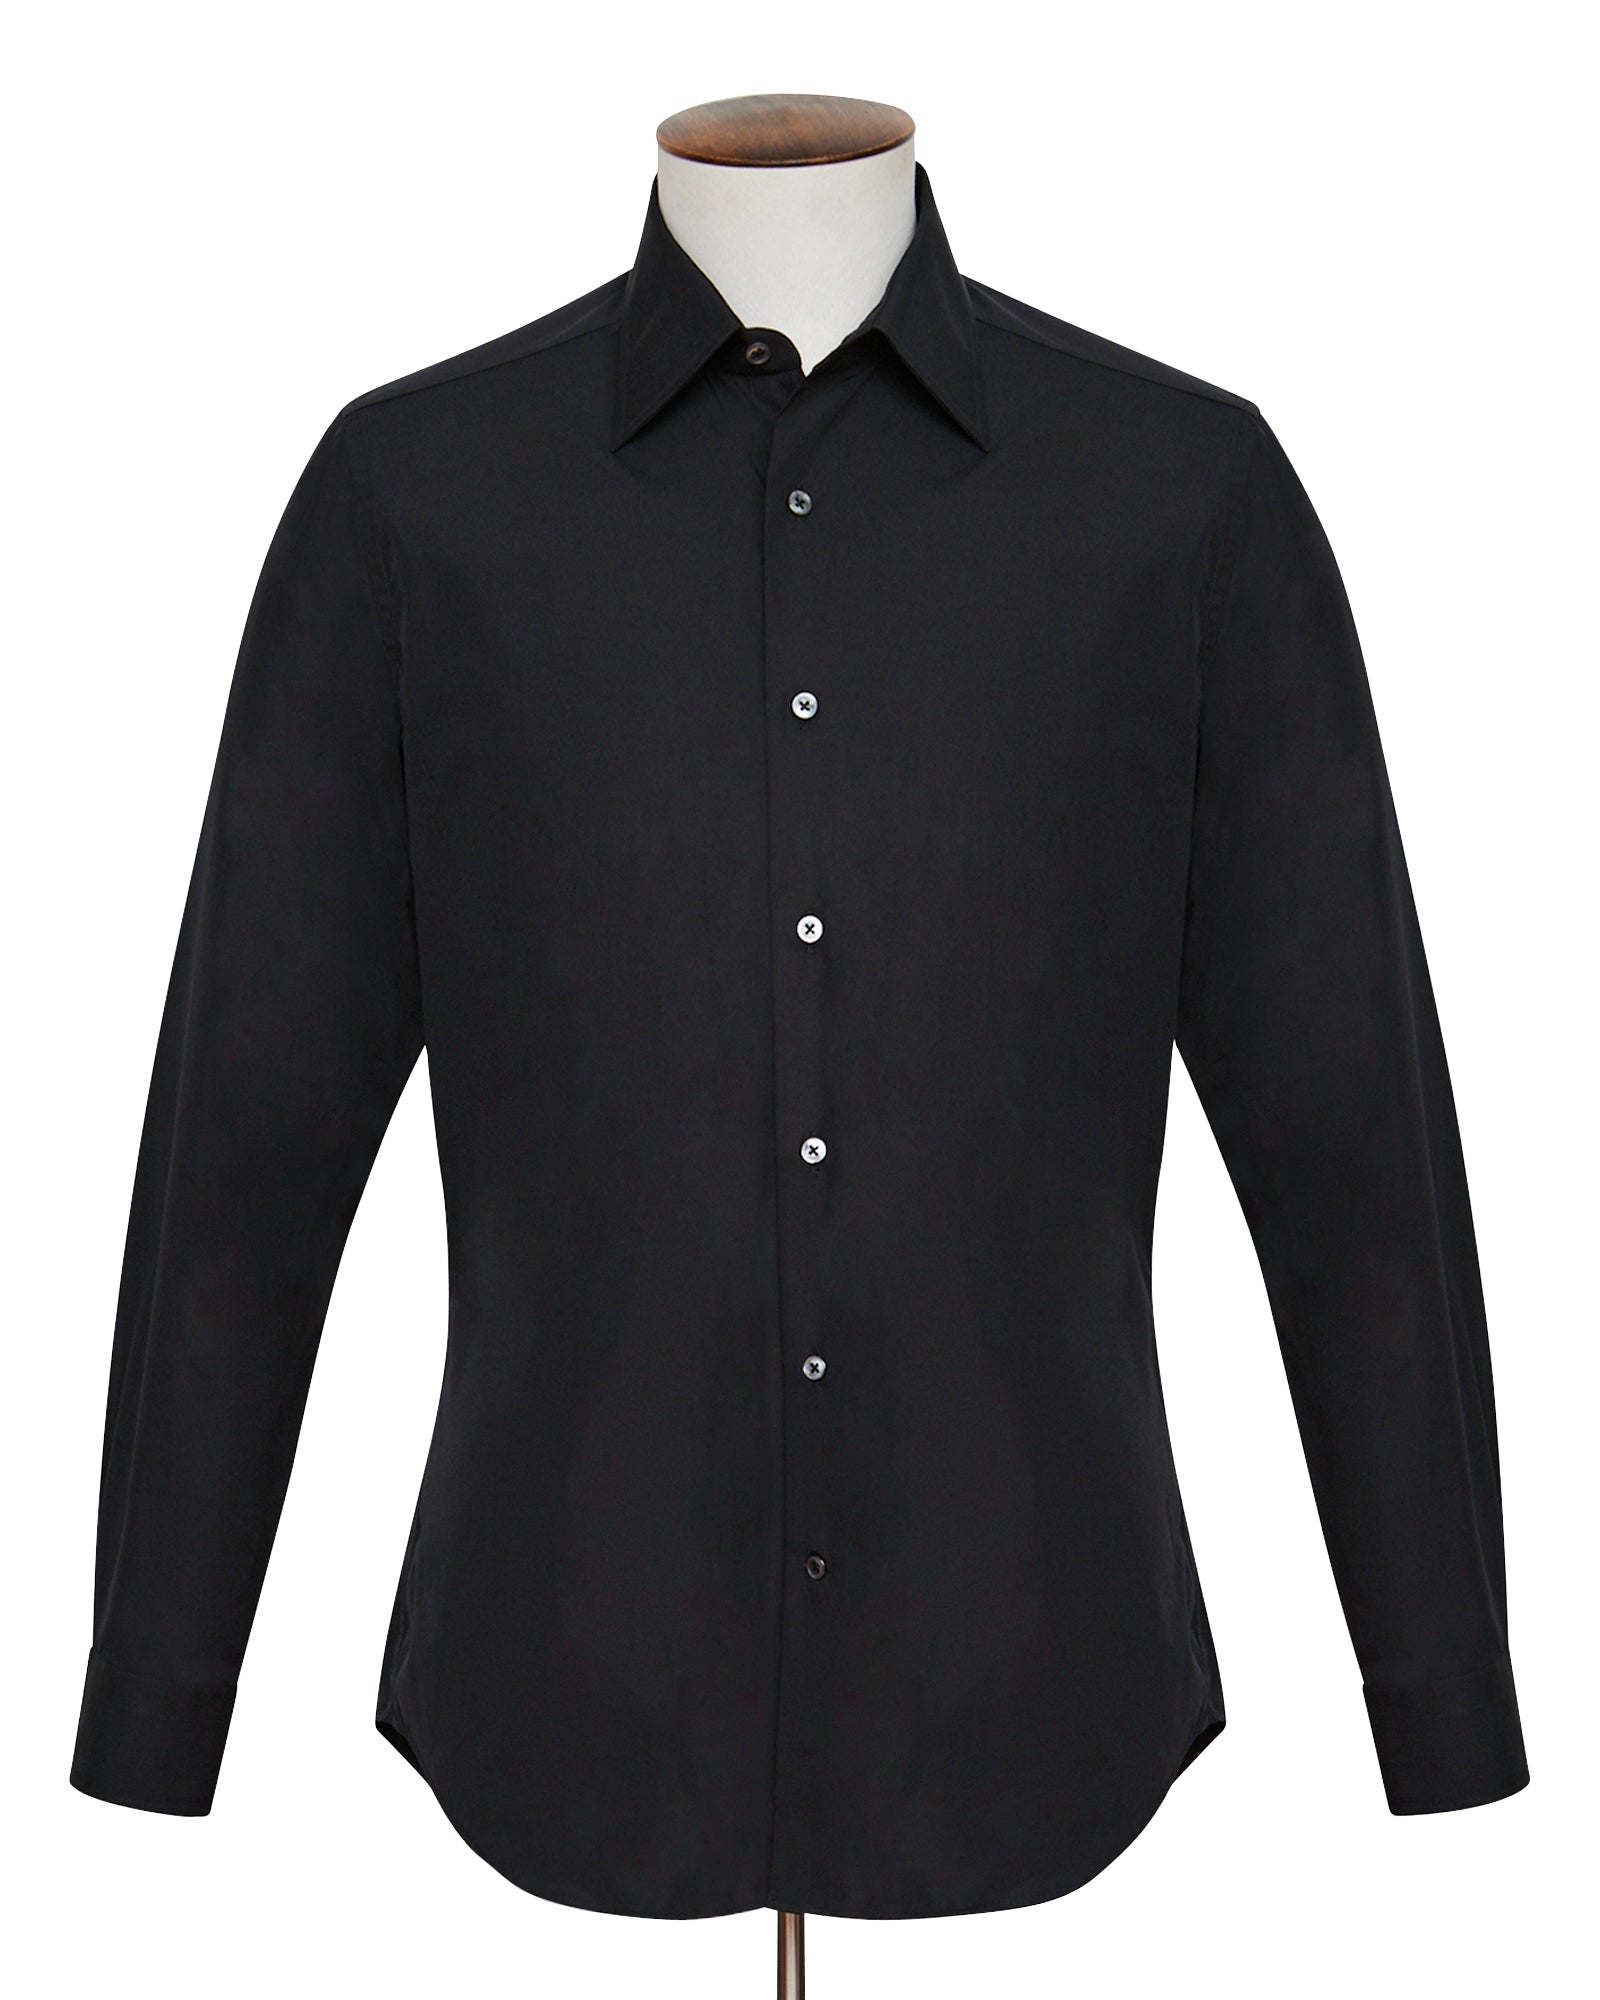 Black Poplin Spread Collar Shirt